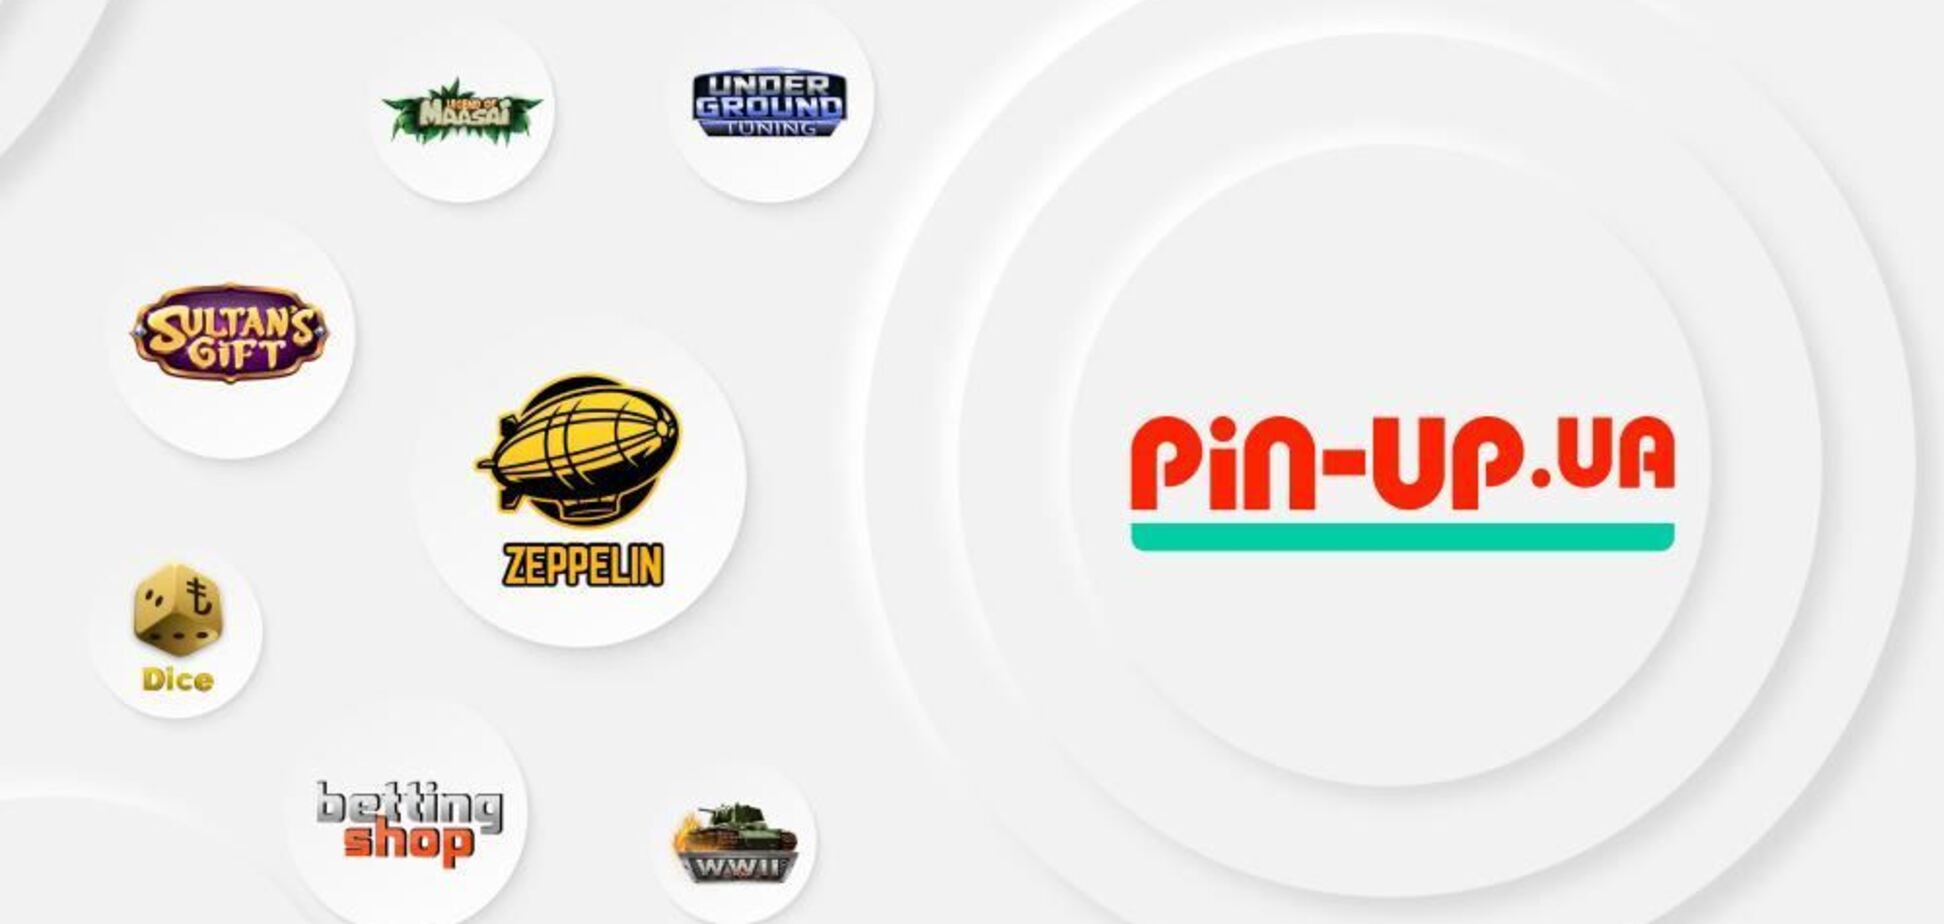 Игры от Betsolutions появились на платформе Pin-up.ua